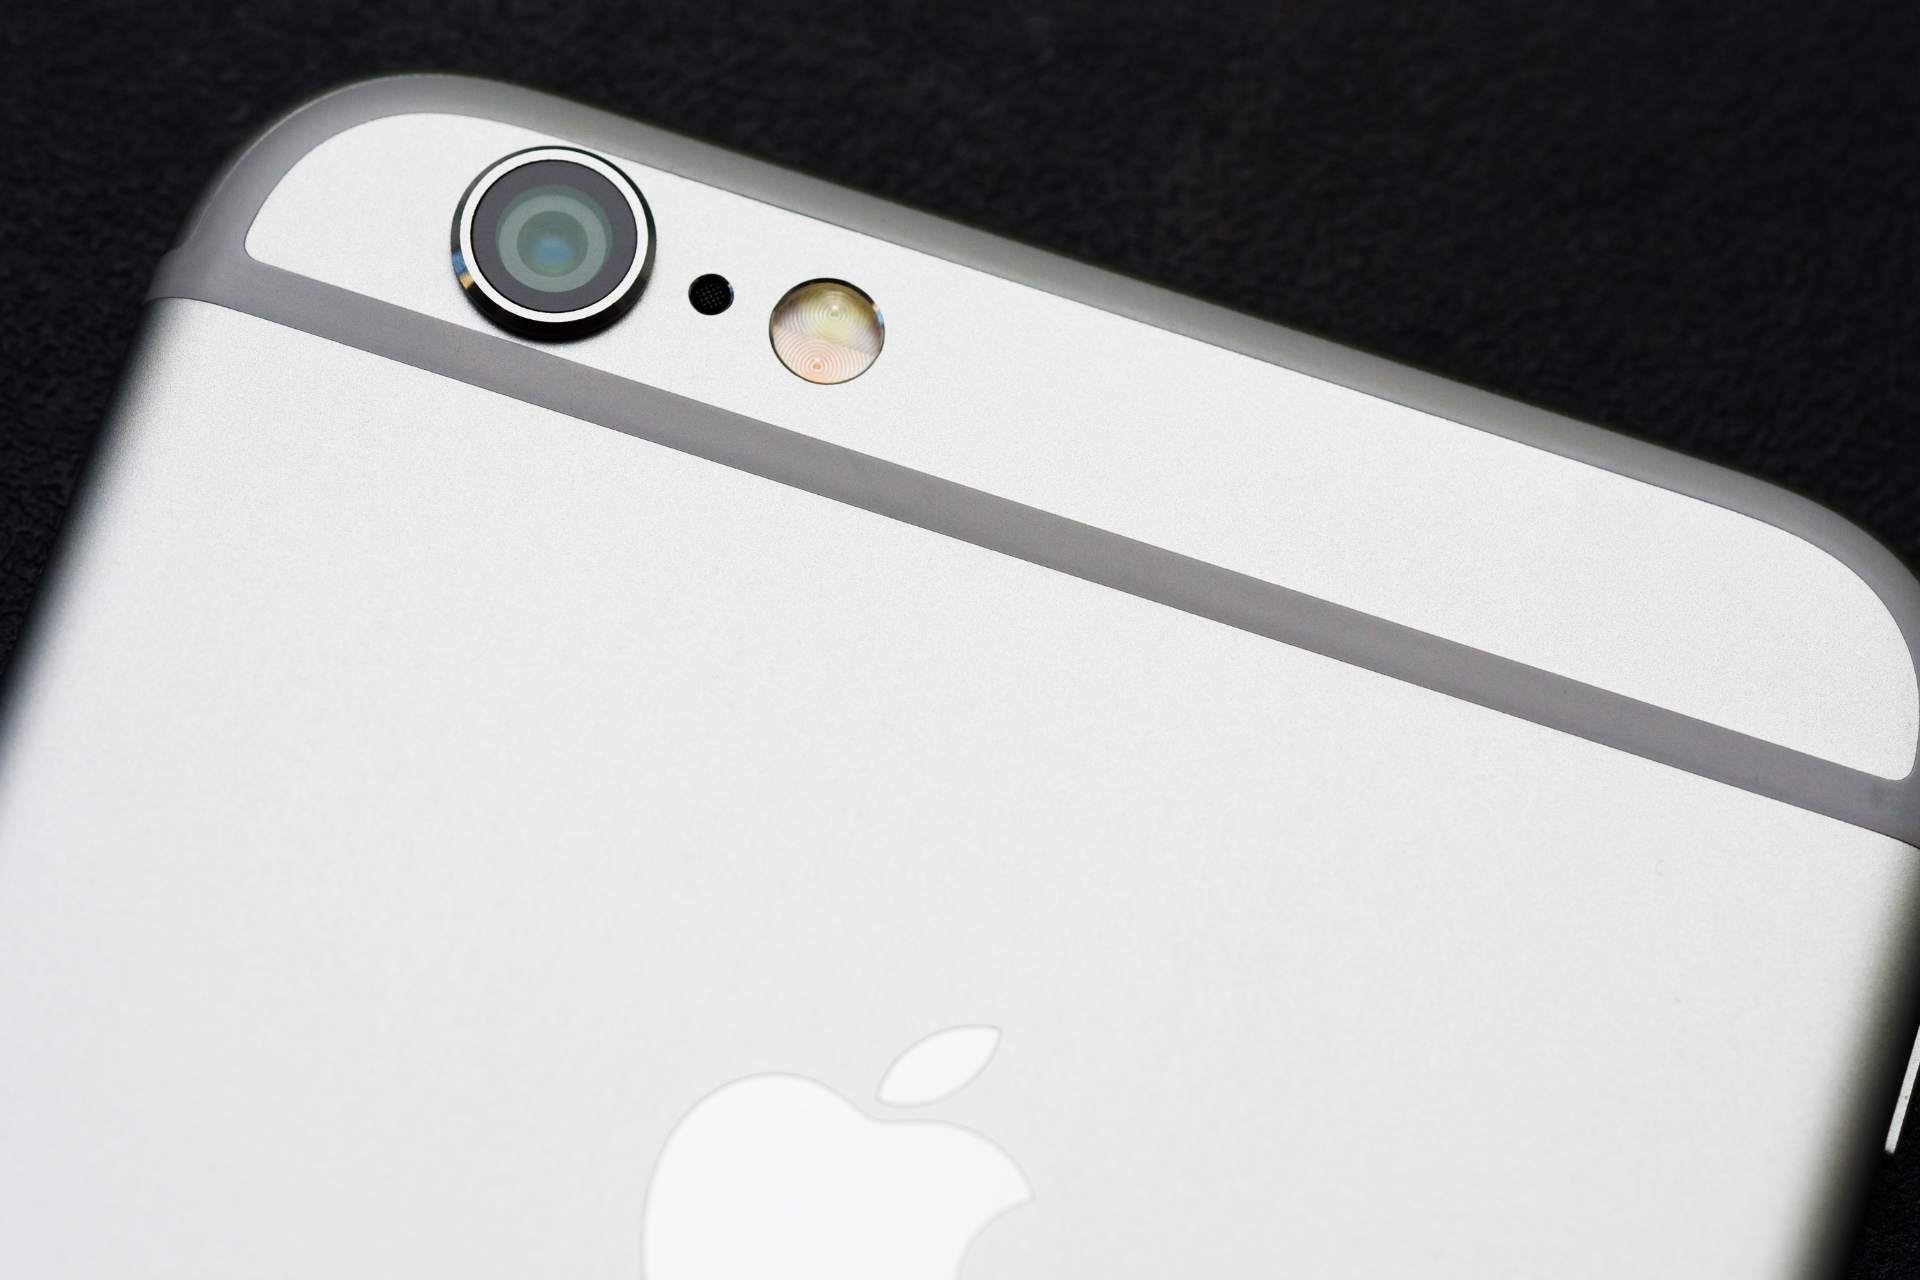 92,17 dollar per styck: Apple har börjat betala ut kompensation för långsammare iPhones